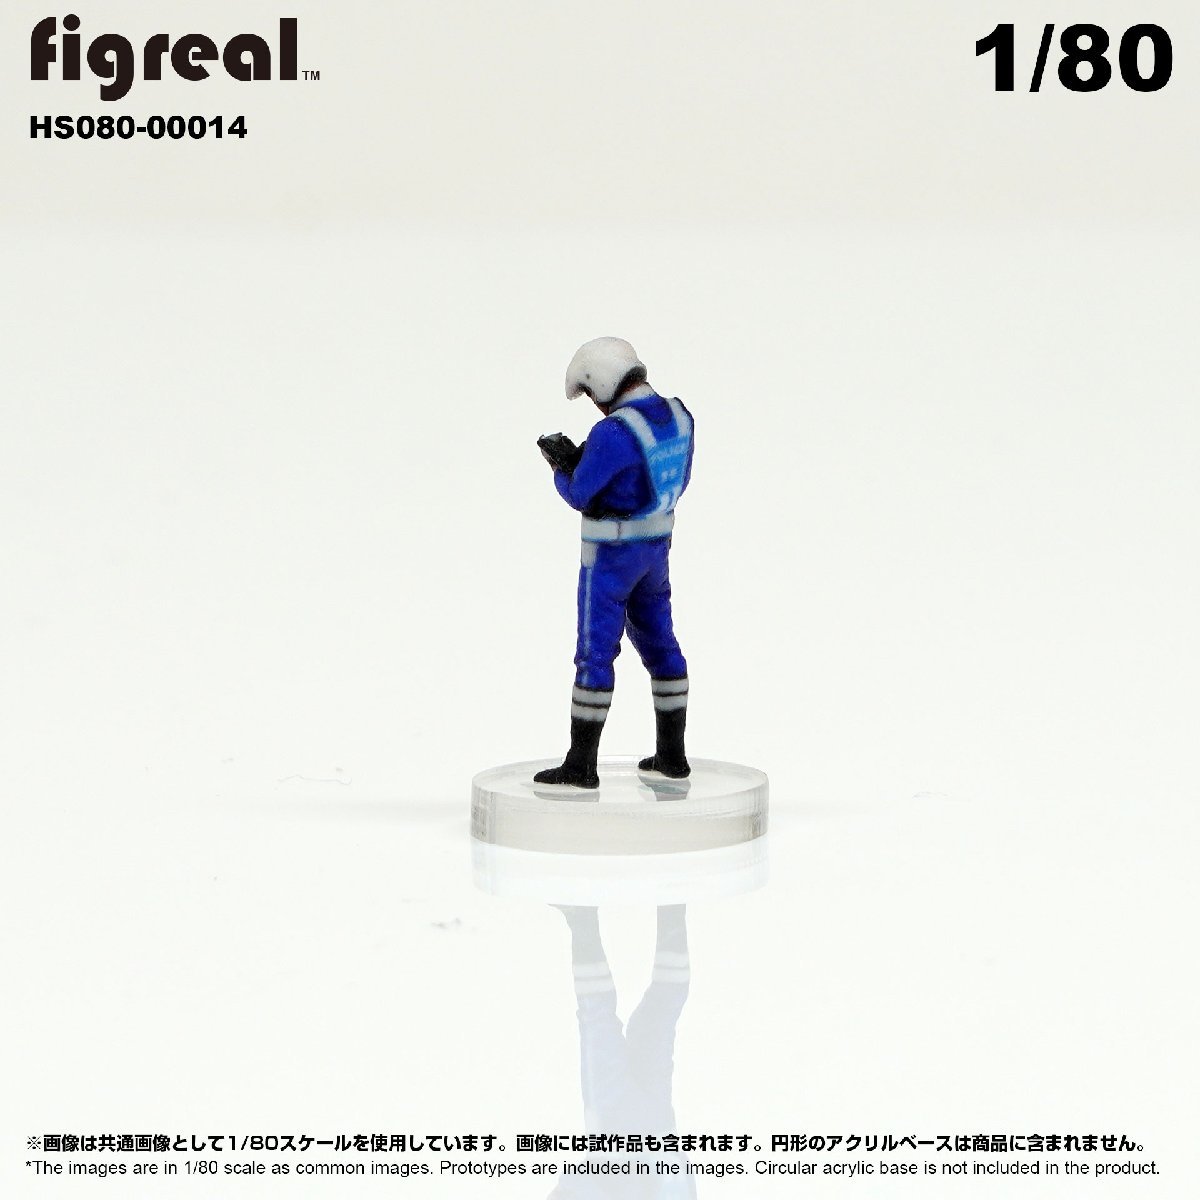 HS080-00014 figreal 日本白バイ隊員 1/80 高精細フィギュア_画像4